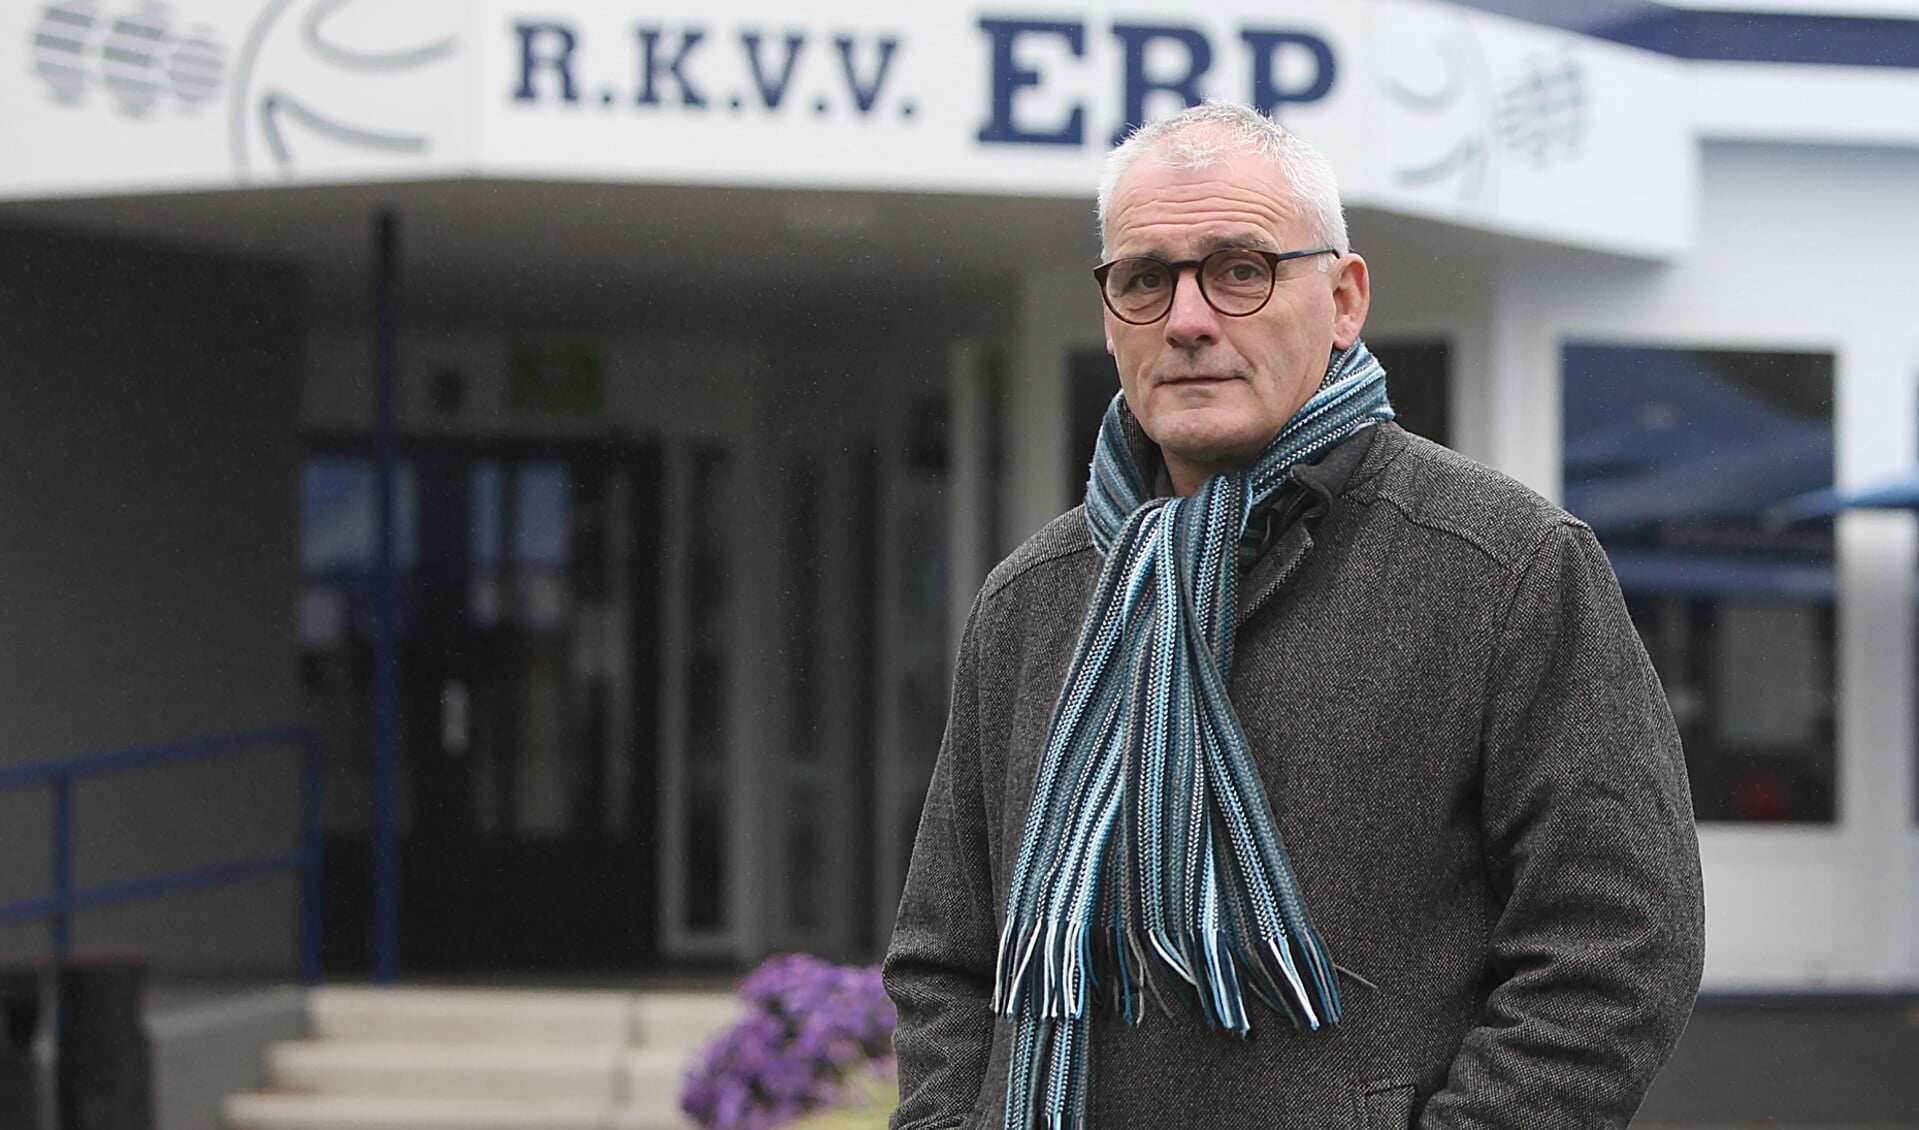 Toon Kerkhof is voorzitter van RKVV Erp: 'Ik heb verschillende collega’s gesproken, maar allen hopen we dat de winterstop vervroegd begint en we in januari weer op kunnen starten.'